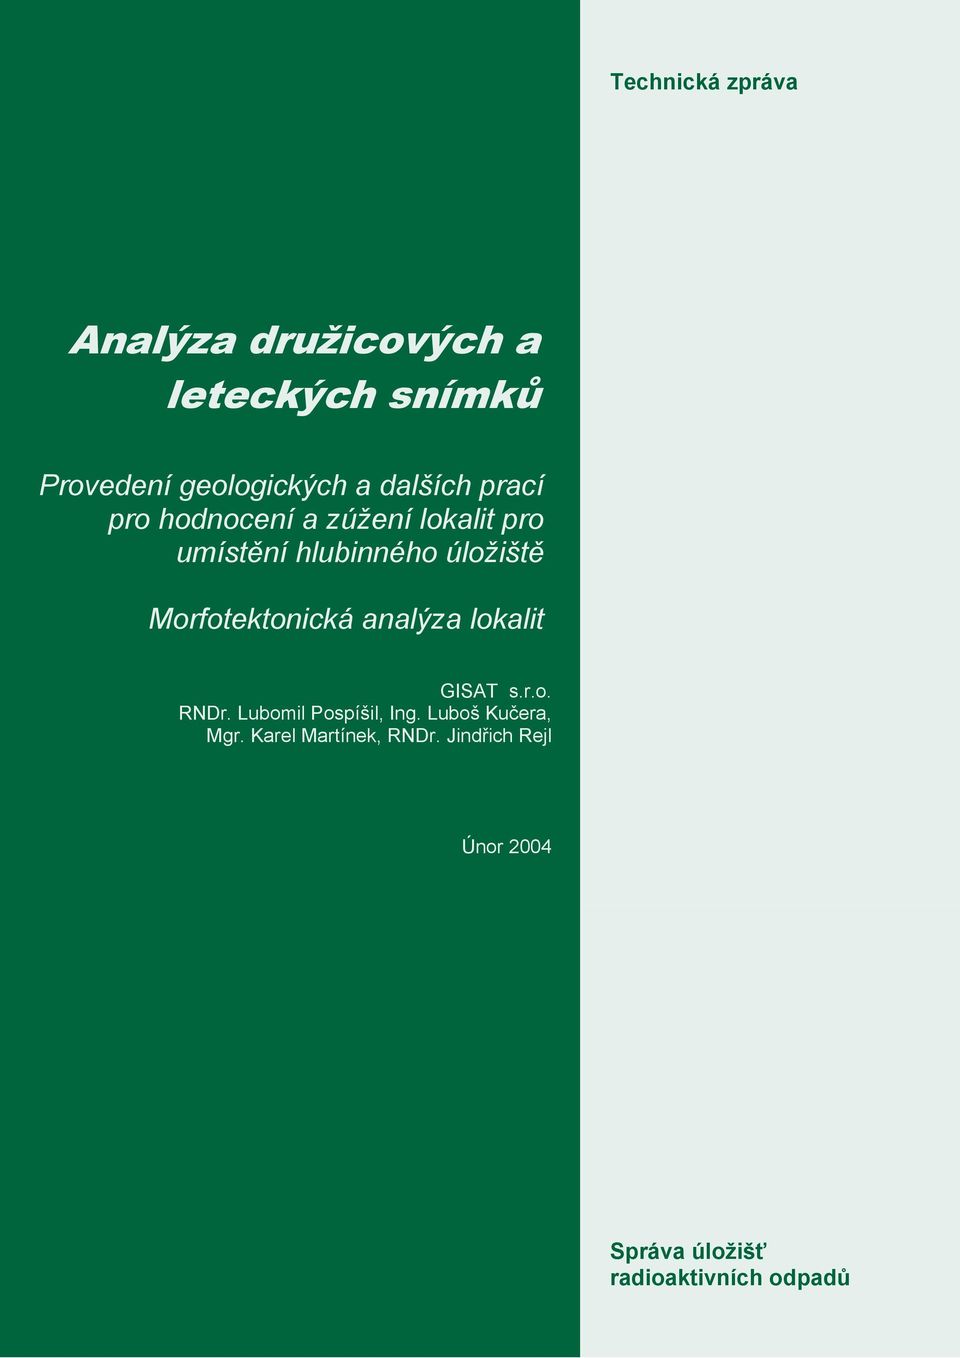 Morfotektonická analýza lokalit GISAT s.r.o. RNDr. Lubomil Pospíšil, Ing.